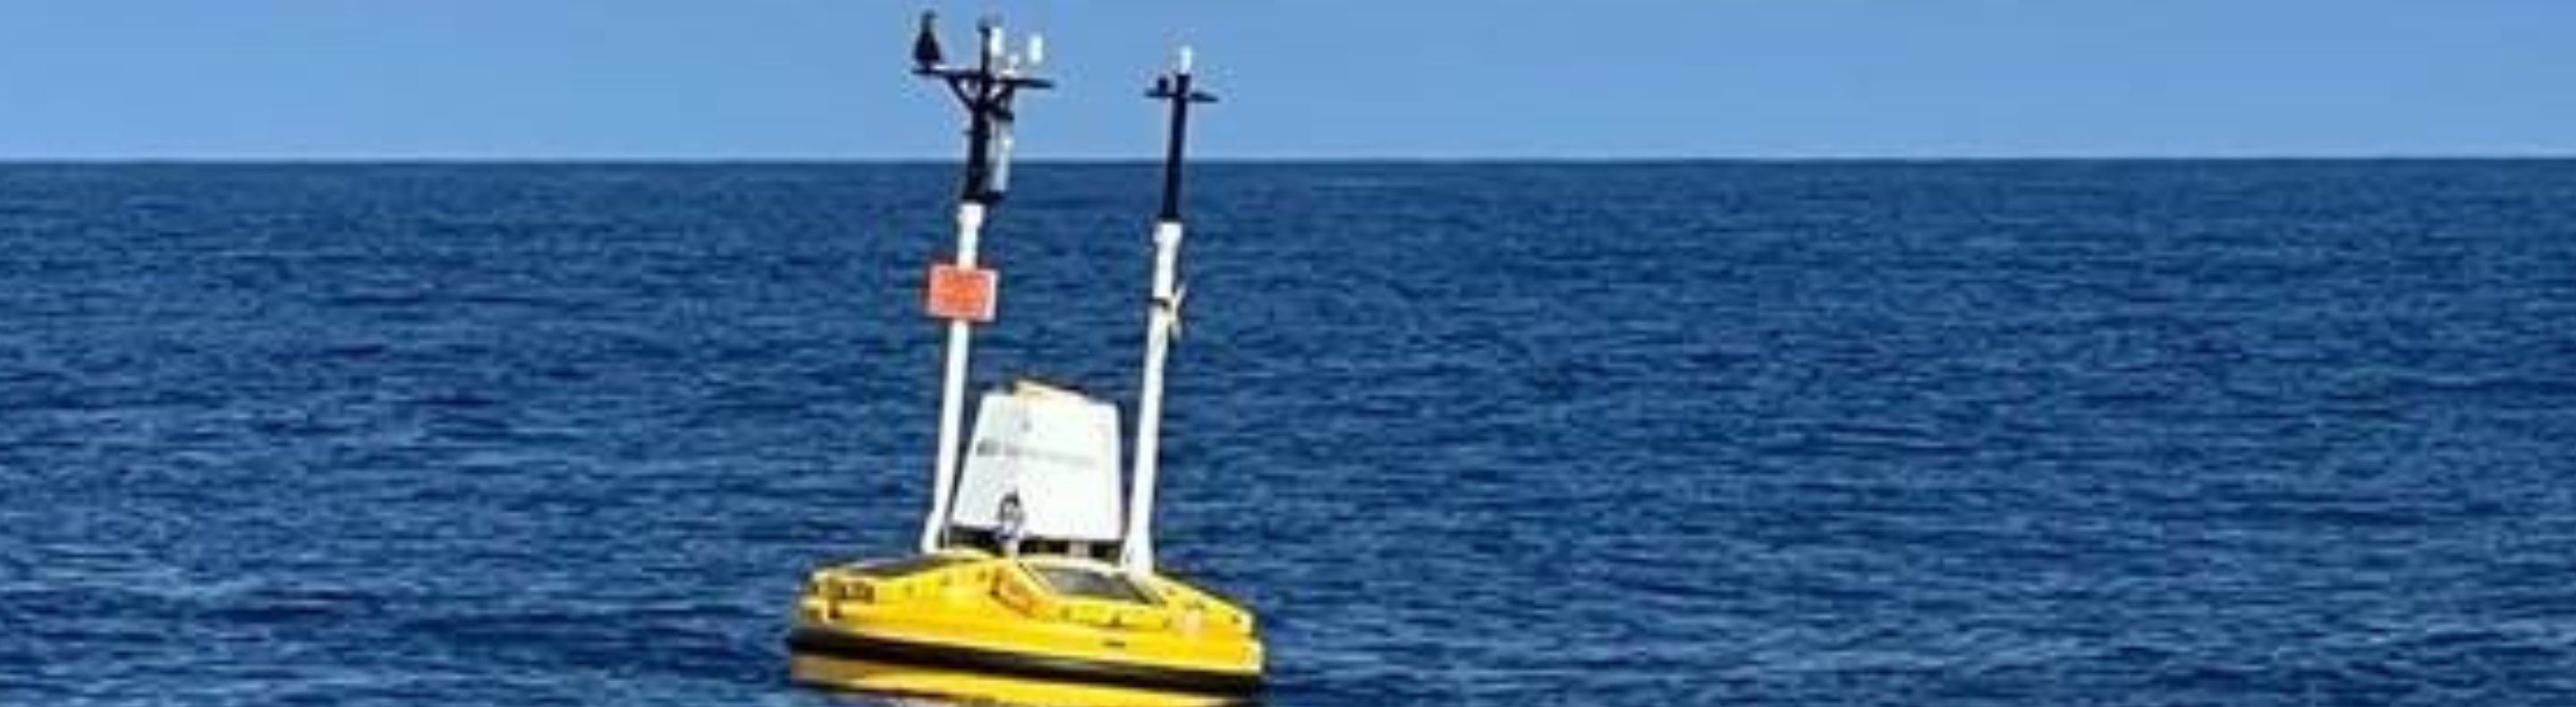 Neoenergia instala sistema flutuante pioneiro no Brasil para estudos de medição eólica offshore